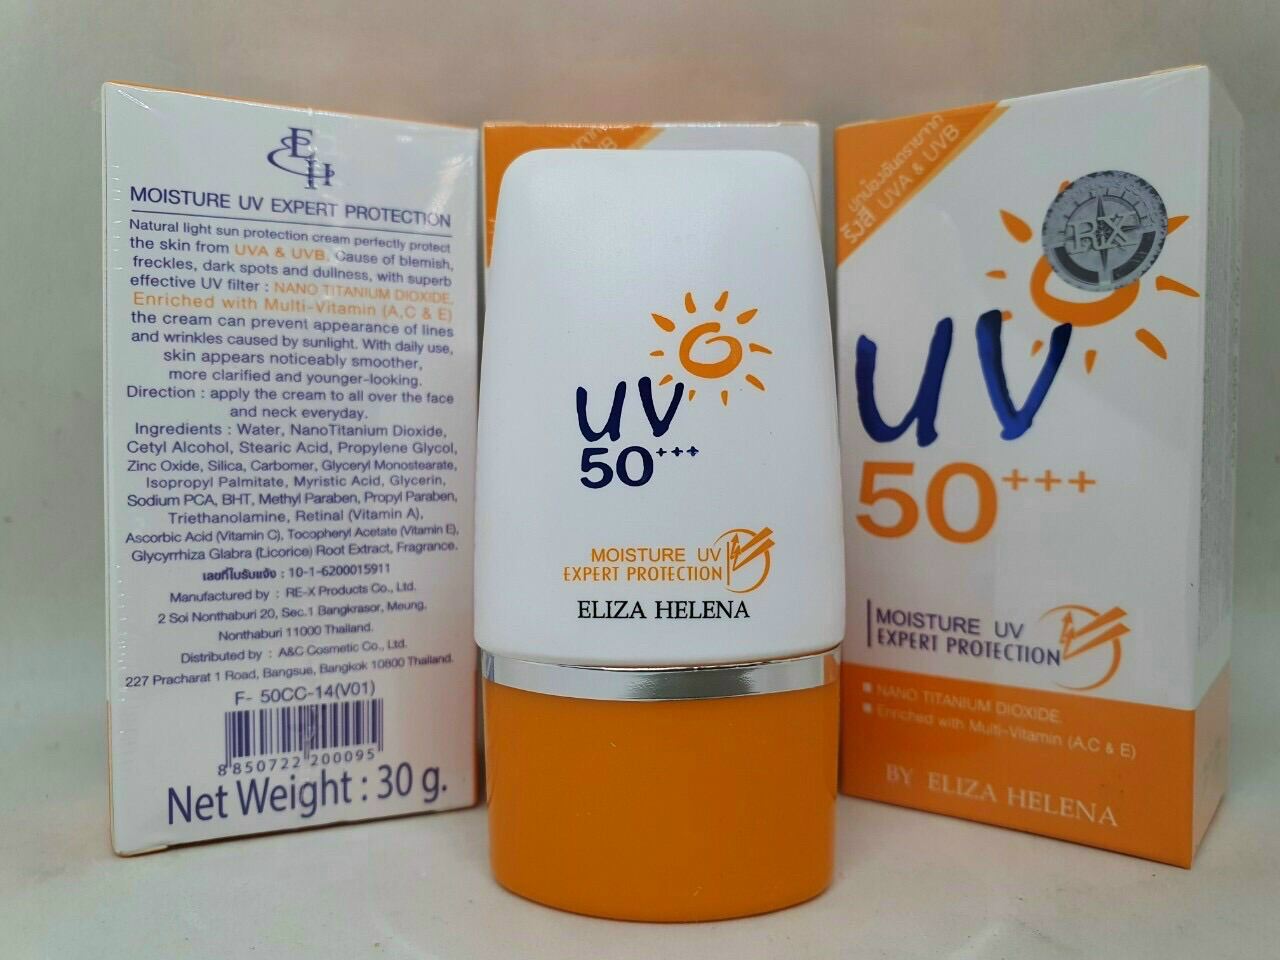 Kem Chống Nắng UV 50 Thái Lan Aliza Helena 30g